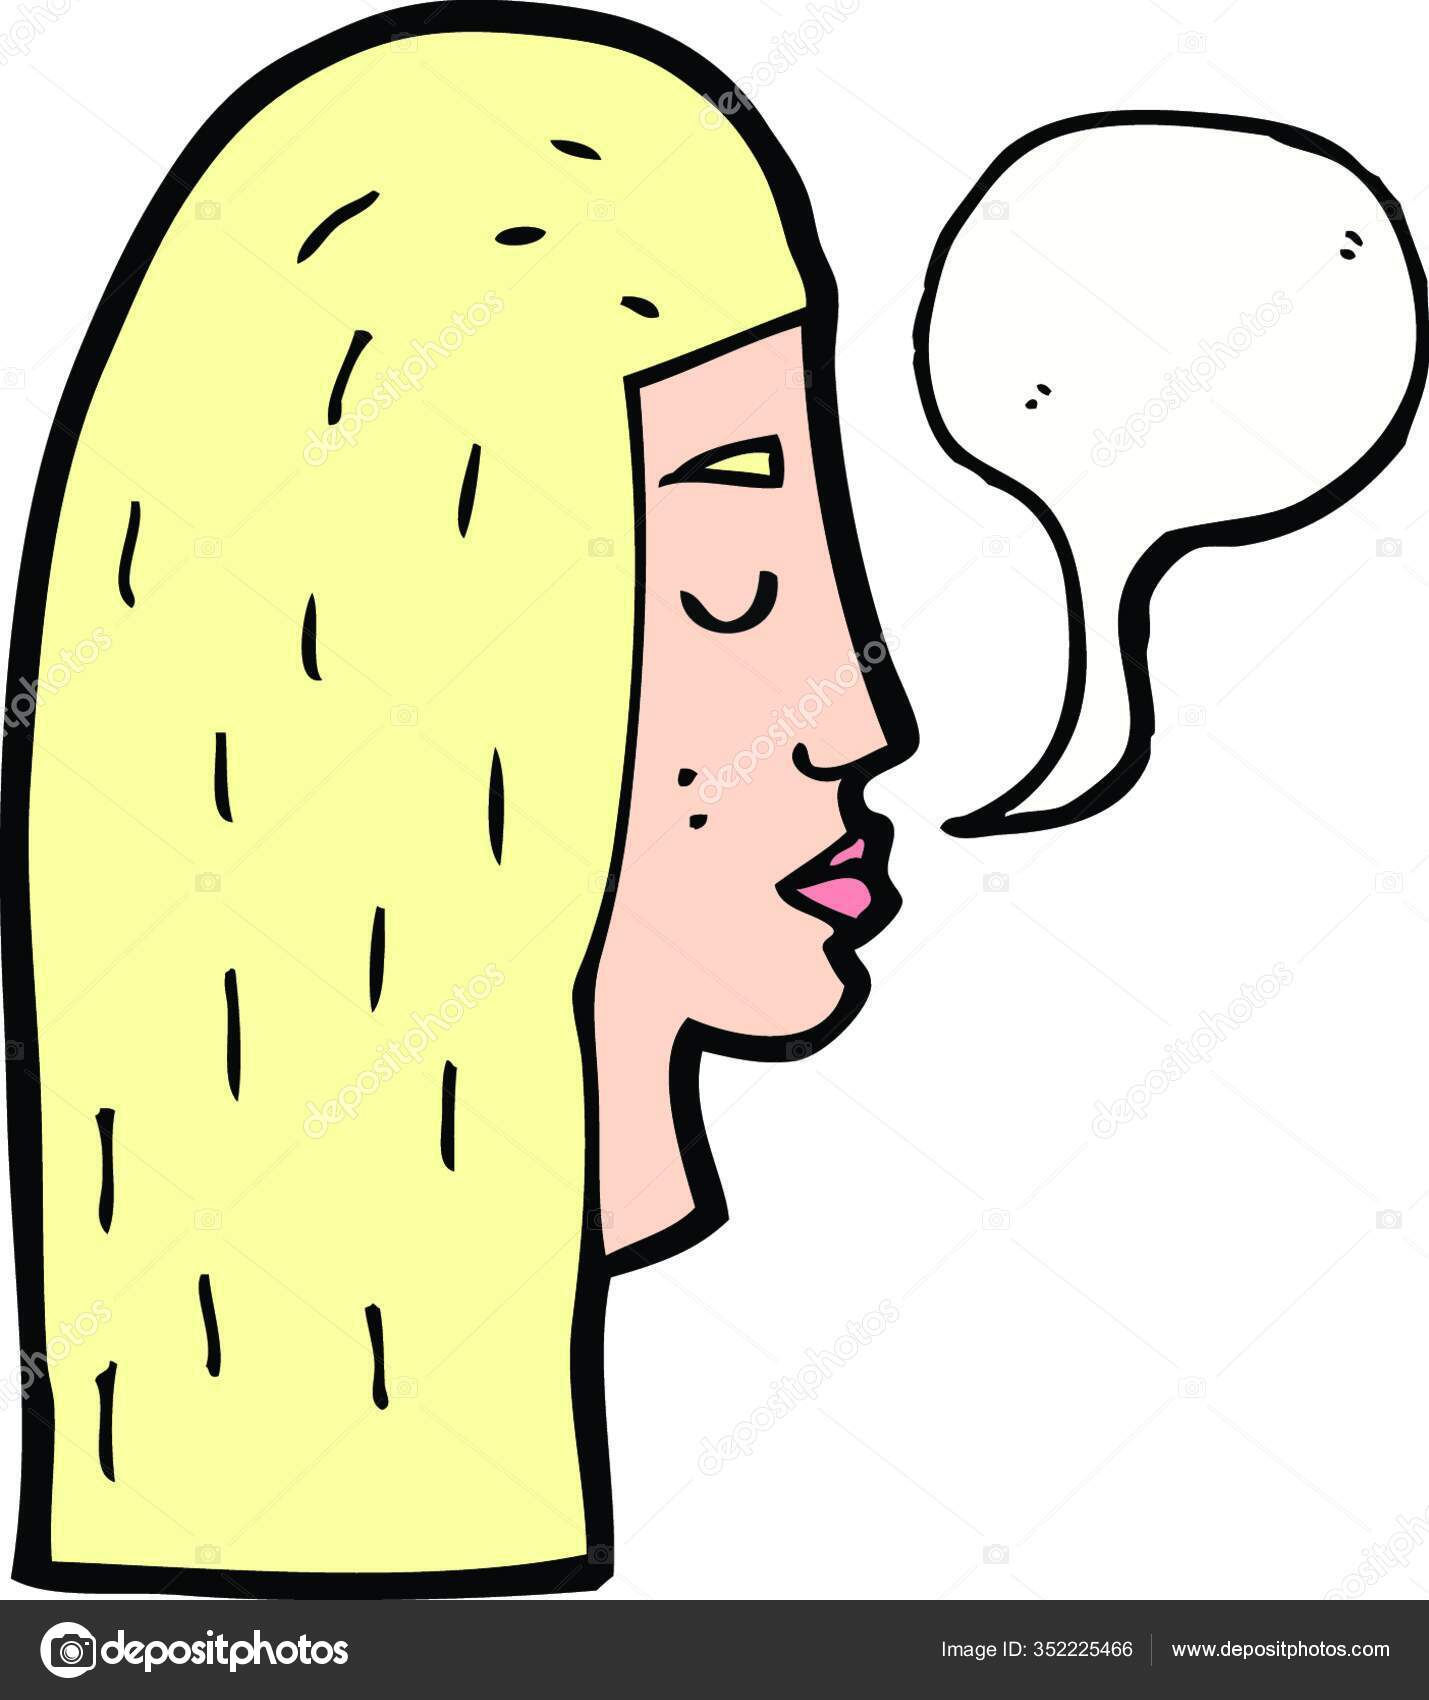 Ícone de perfil de emoção triste feminino, rosto de retrato de desenhos  animados de mulher imagem vetorial de mast3r© 165884788